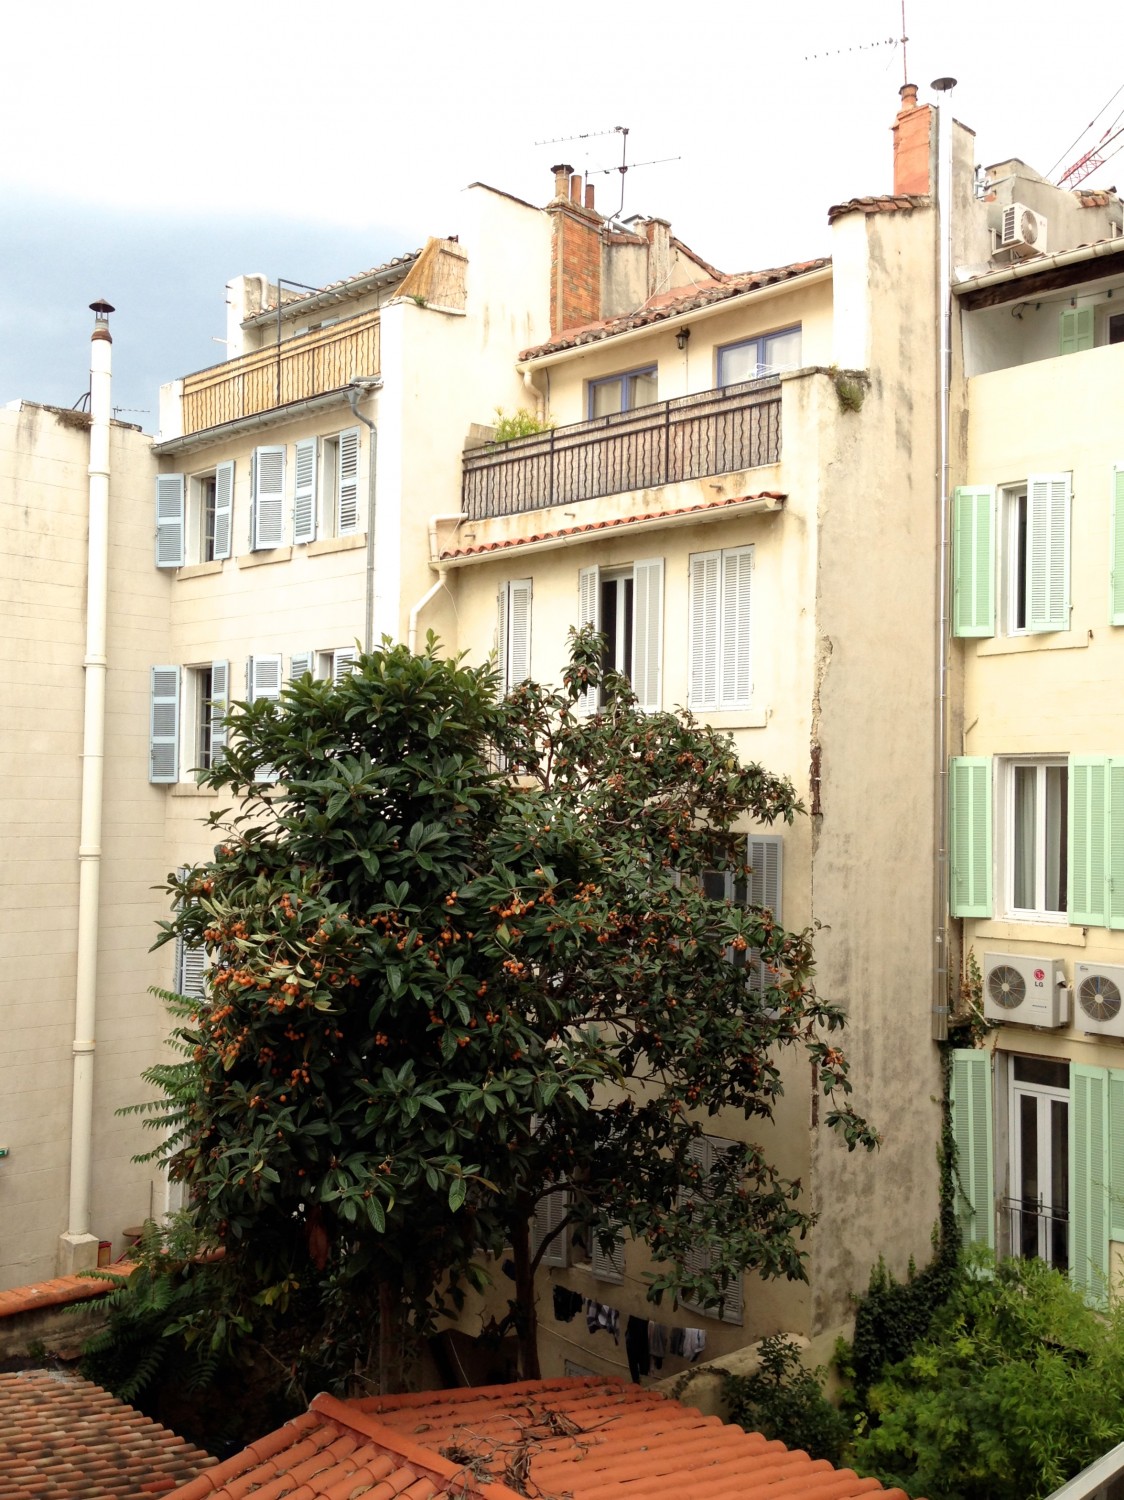 Alex Hotel // A Trip to Marseille #choosemarseille | Flodeau.com